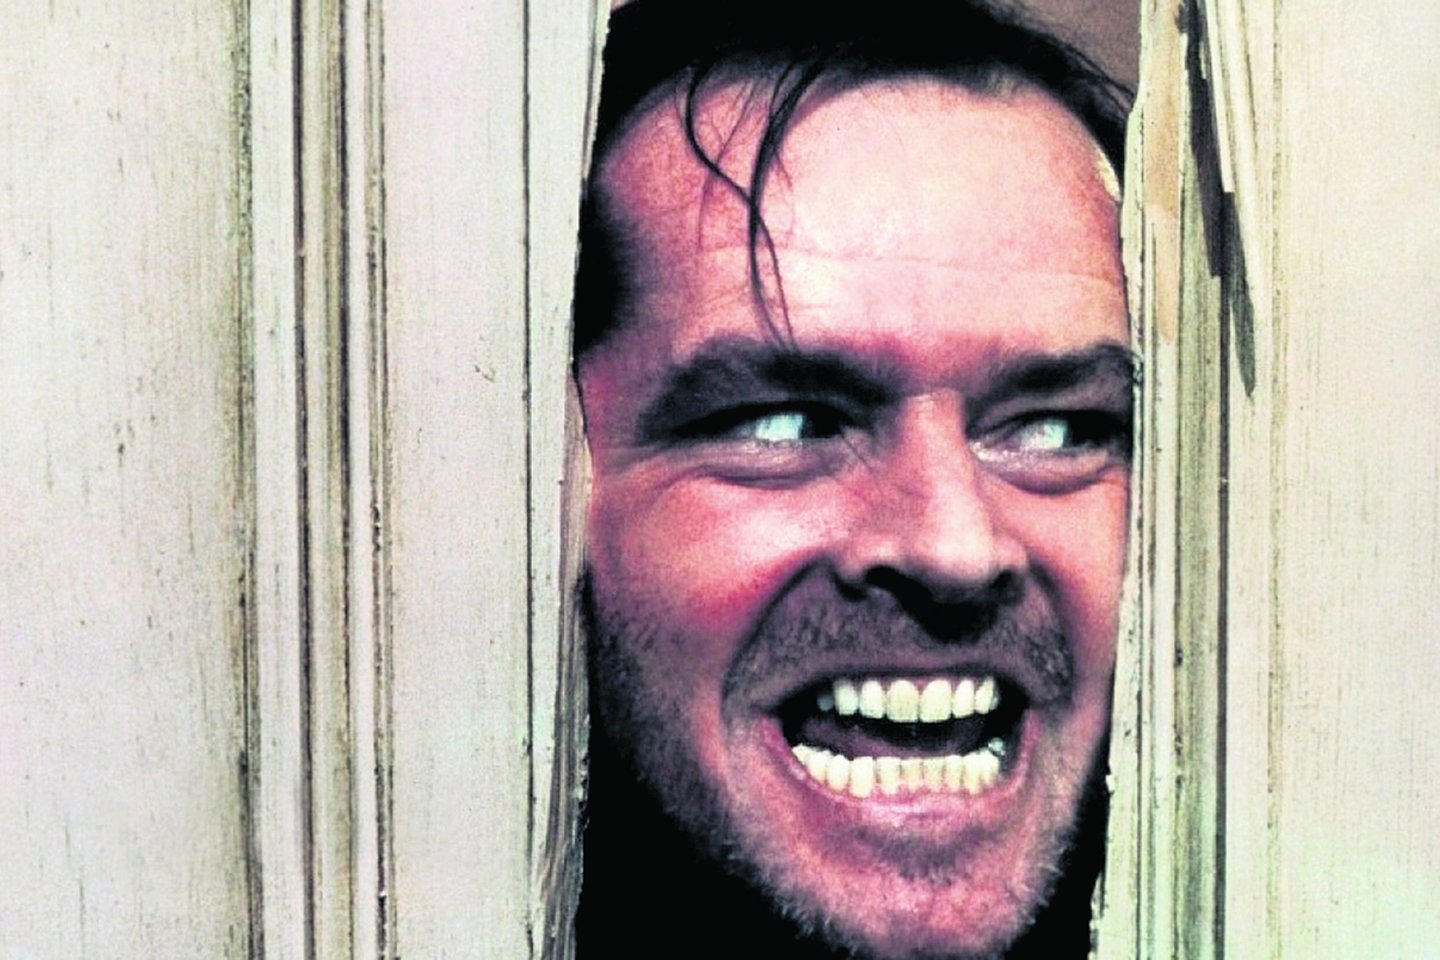 Kol buvo tinkamai nufilmuotas šis epizodas, J.Nicholsonas savo rankomis išlaužė 60 durų.<br>imdb.com nuotr.